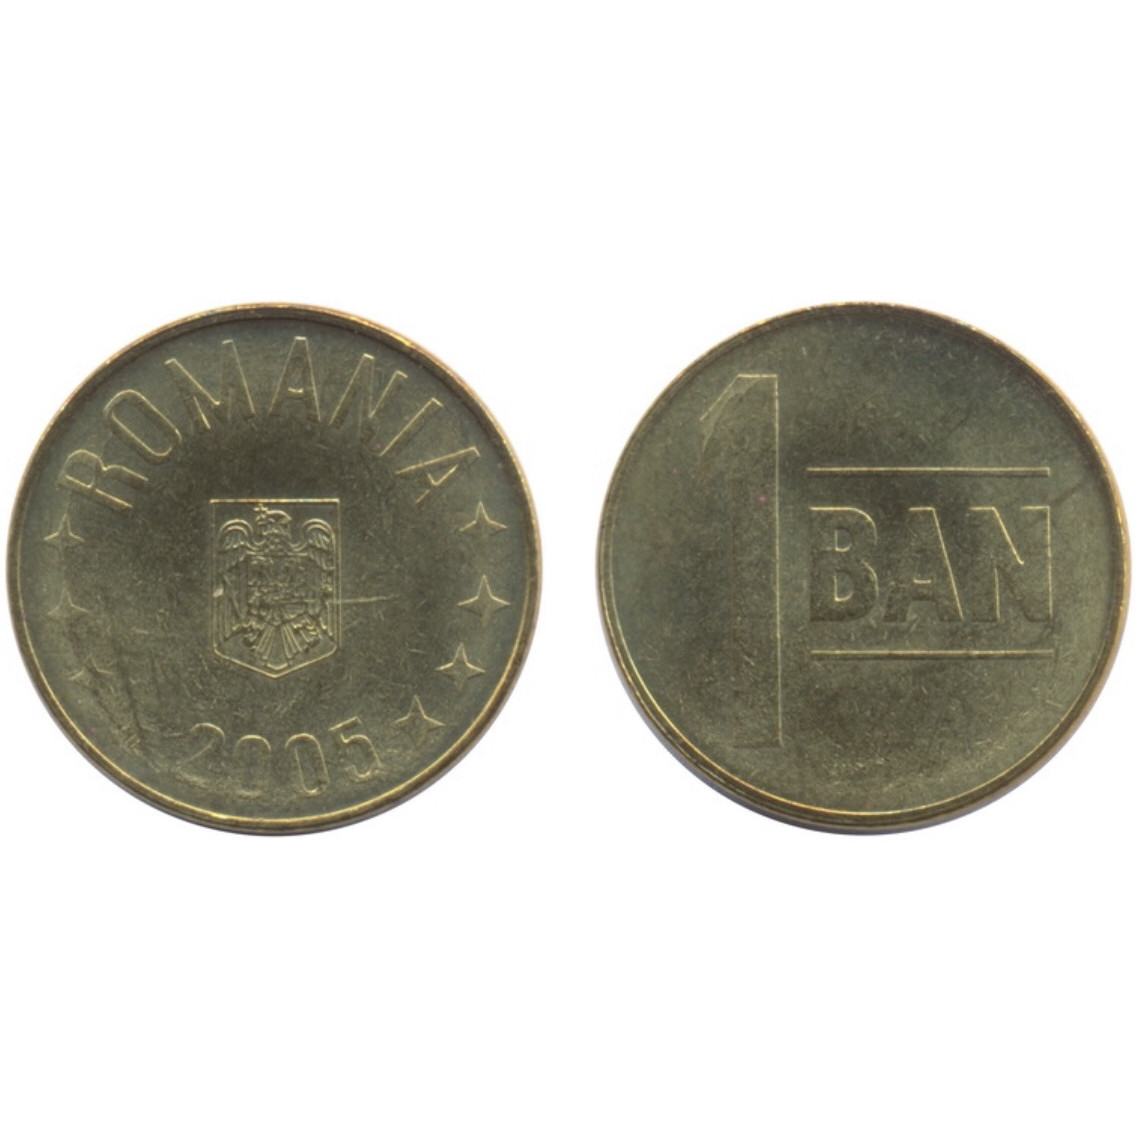 Đồng xu Romania 1 ban sưu tầm